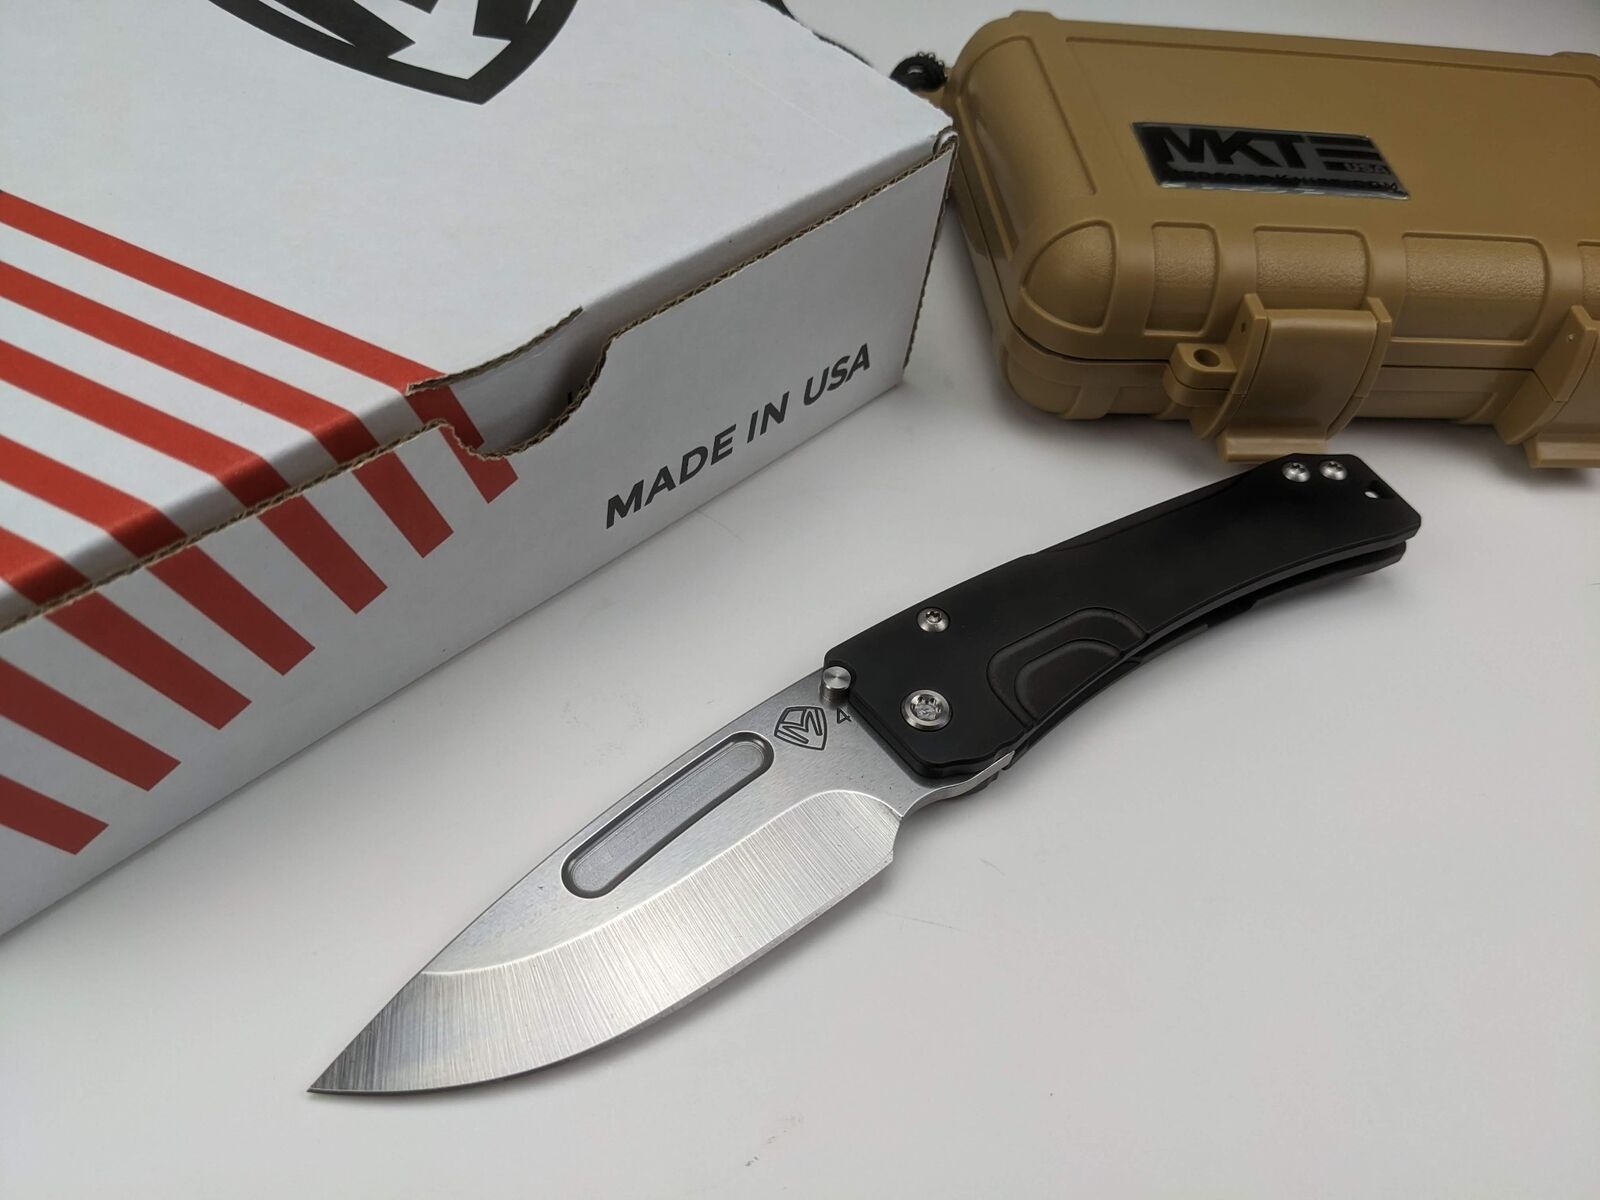 Medford Knife - Slim Midi - Frame Lock Titanium Handle - S45VN Steel  - USA Made